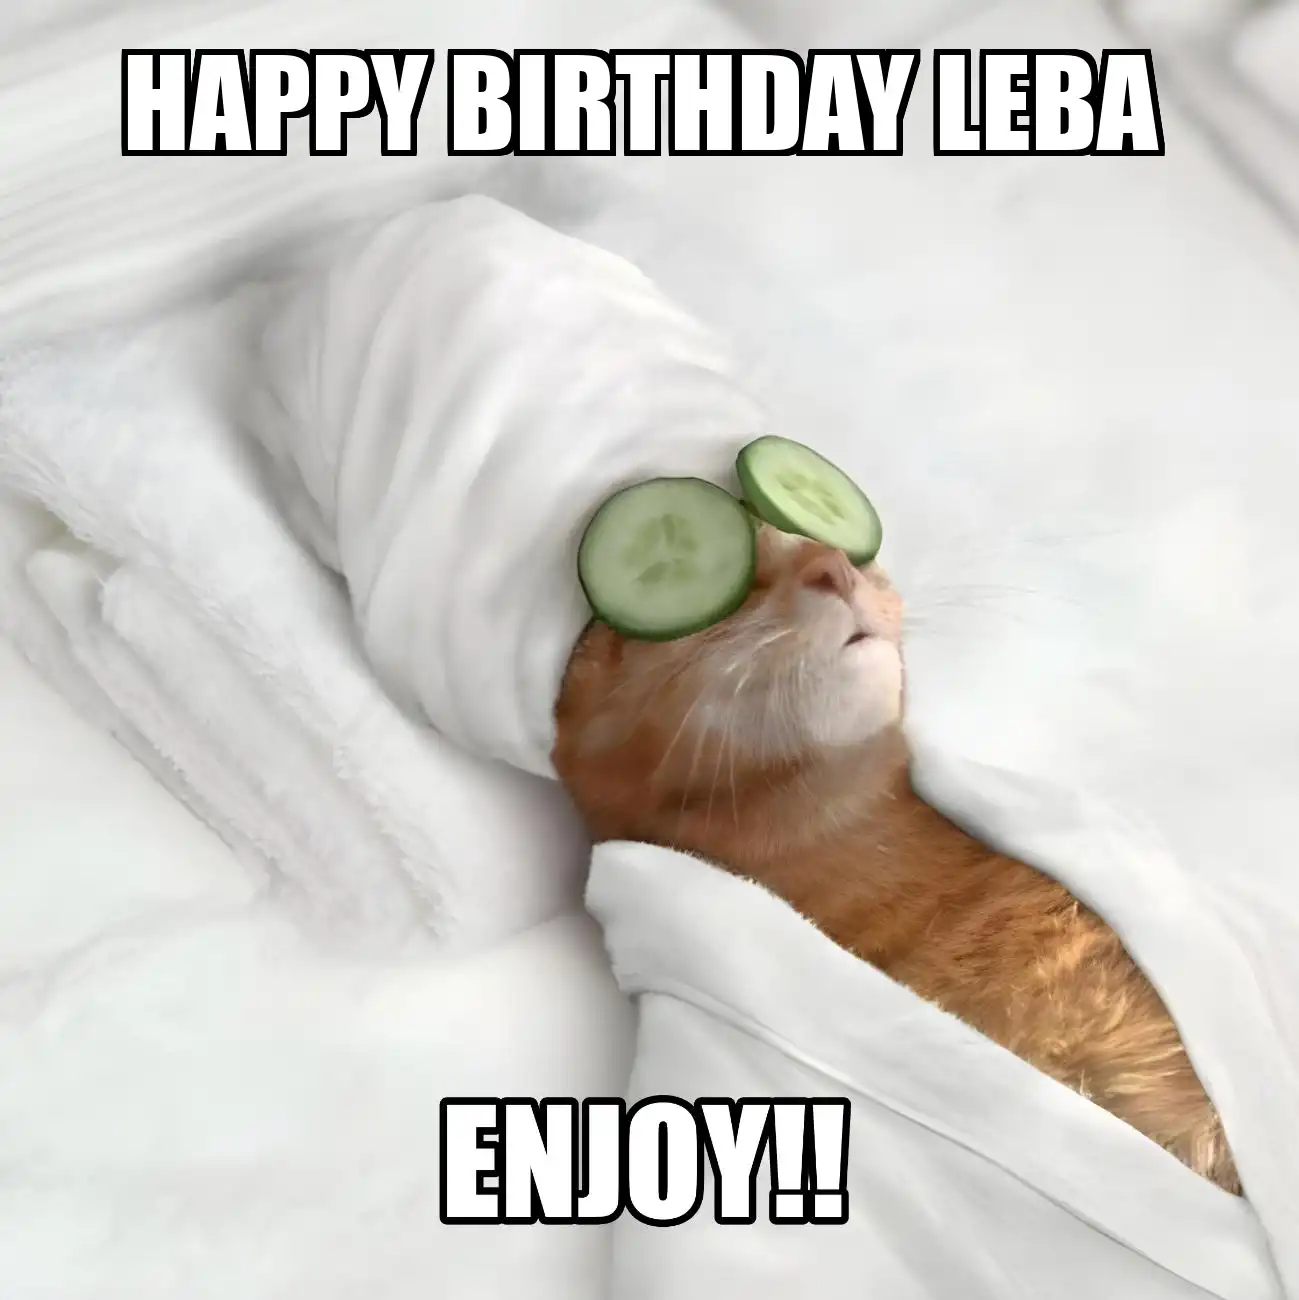 Happy Birthday Leba Enjoy Cat Meme